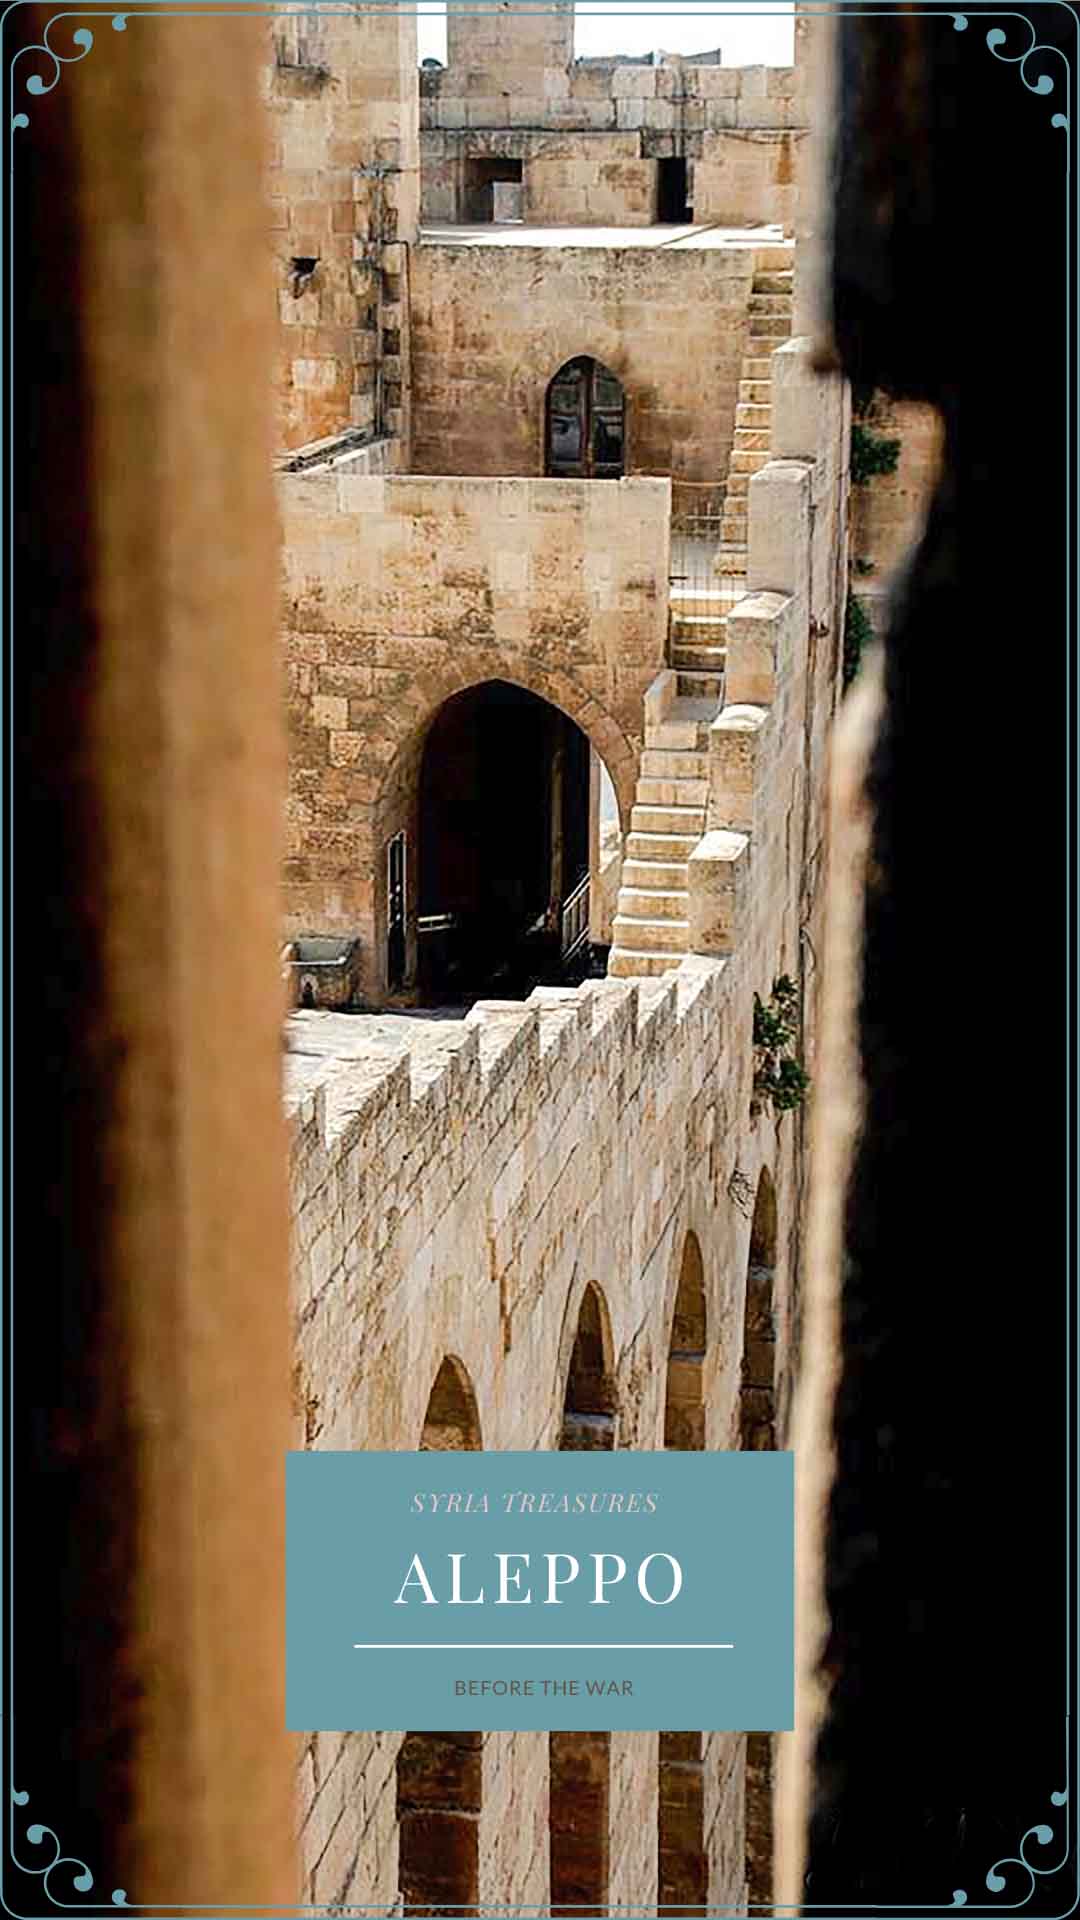 Walls of the Aleppo Citadel